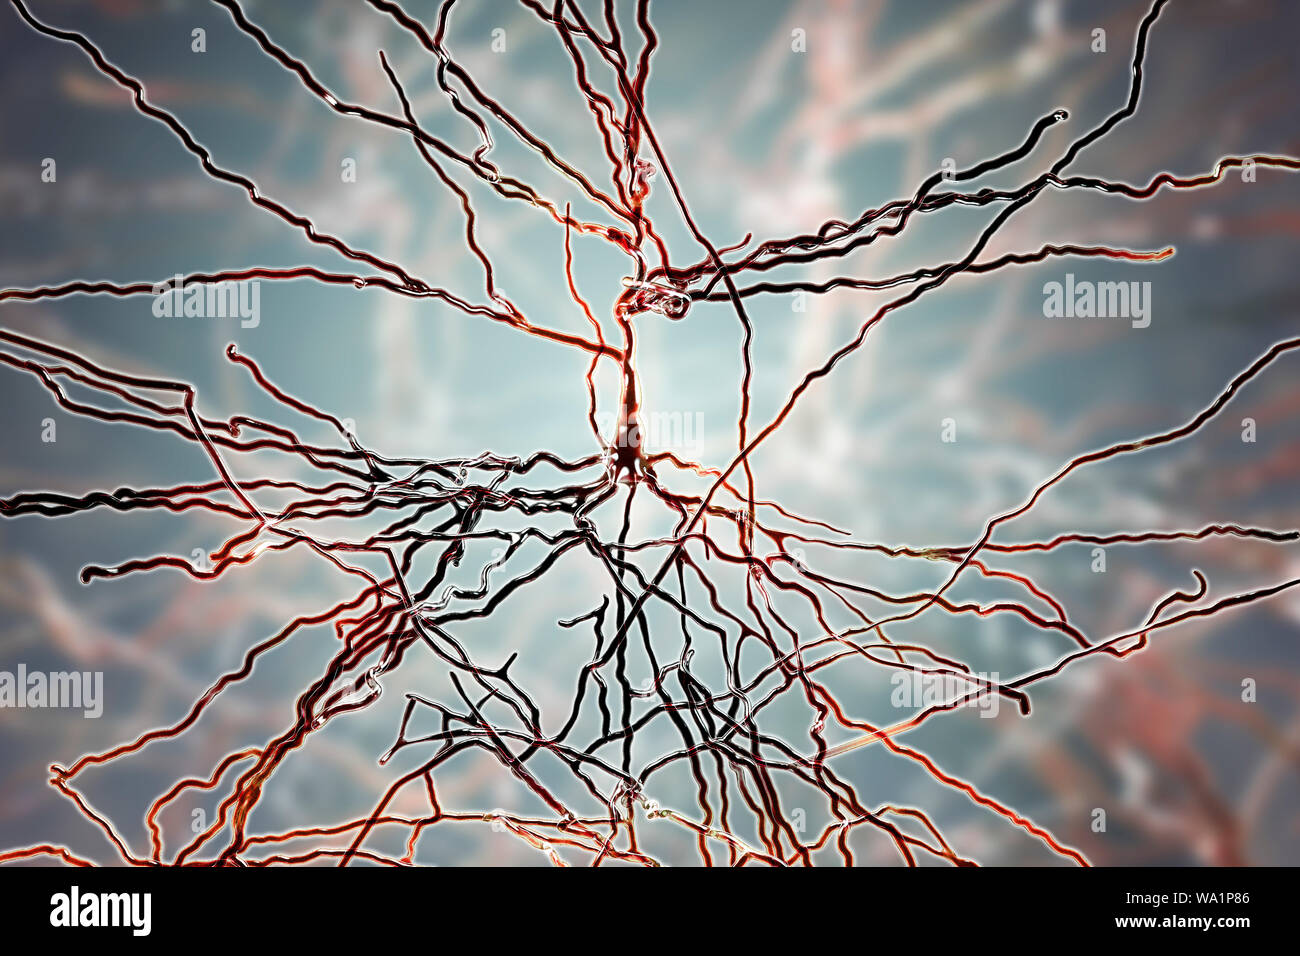 Pyramidenförmigen Neuronen. Abbildung: pyramidenförmige Nervenzellen in der Großhirnrinde des Gehirns. Pyramidenzellen sind so für ihre dreieckigen Zellkörper benannt. Jede Zelle des Körpers hat zahlreiche Prozesse (Dendriten), die Daten von anderen Nervenzellen und Sinneszellen übertragen. Jede Zelle des Körpers hat auch einem Axon aus, durch welche Sie Informationen an andere Zellen. Stockfoto